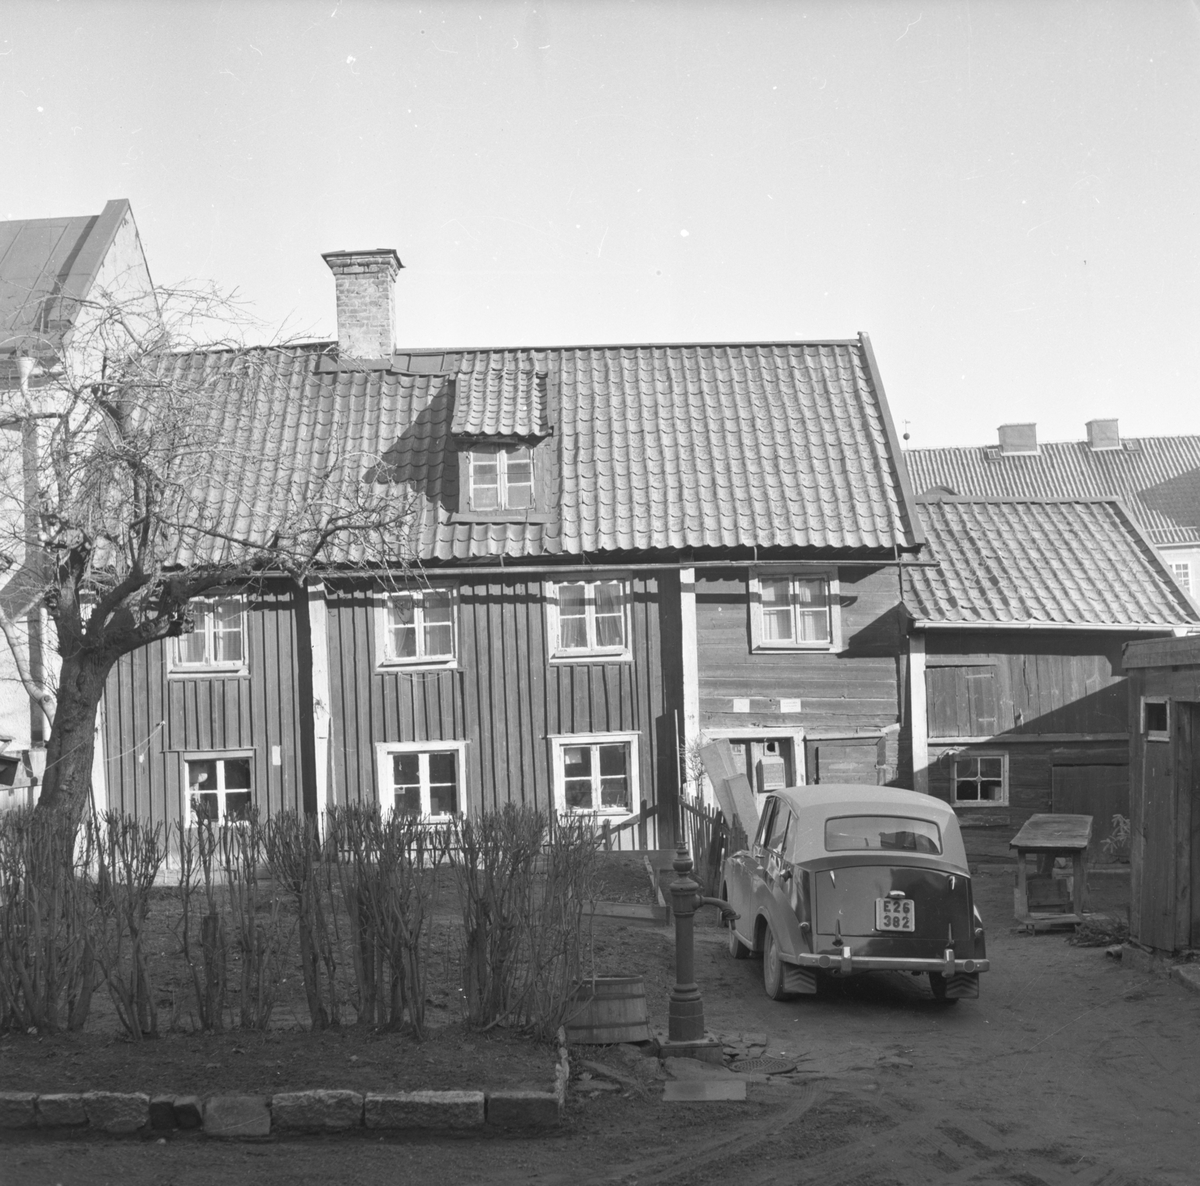 Motiv från Hunnebergsgatan 25 i Linköping 1961. Boningshuset med bod och uthus sedda från gården. Bilen är en Triumf Mayflower från 1951.